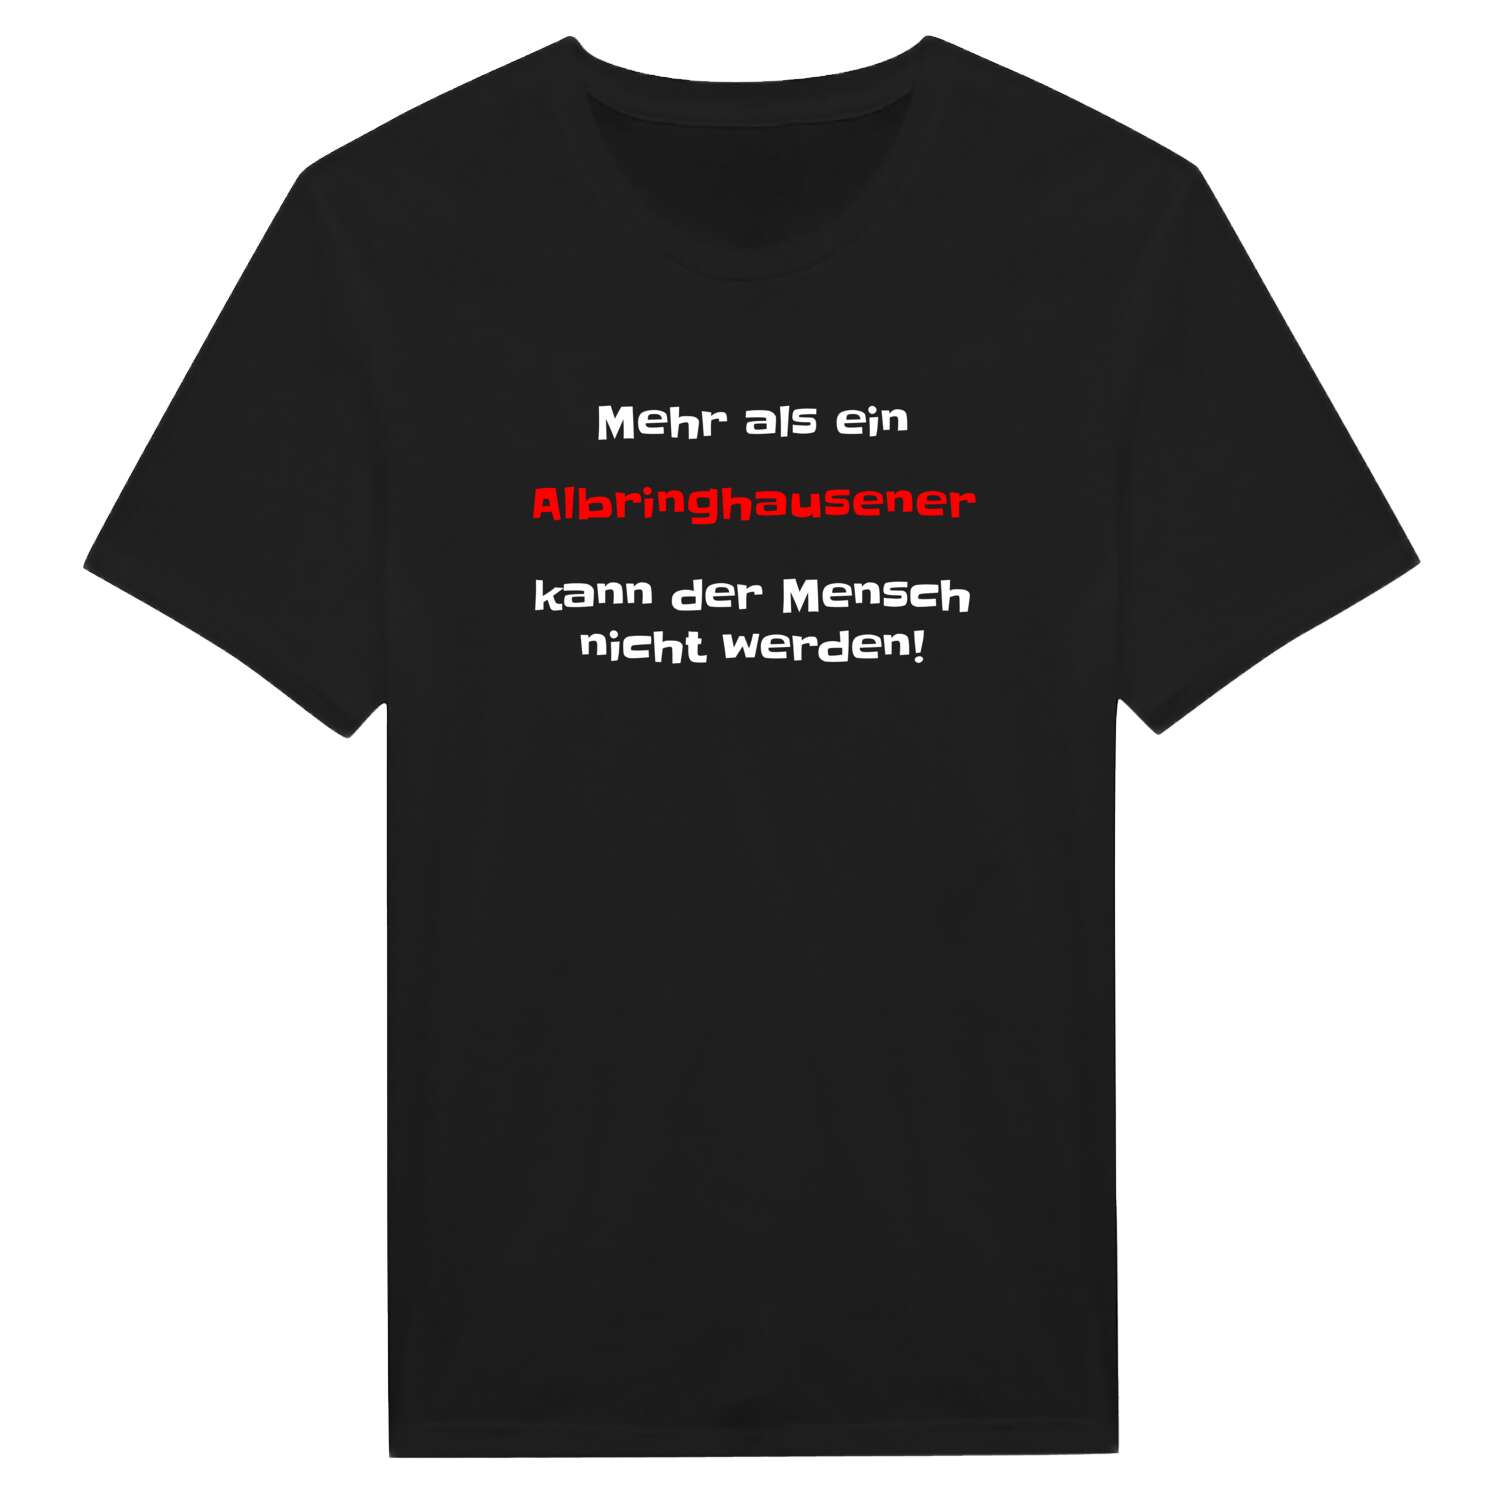 Albringhausen T-Shirt »Mehr als ein«